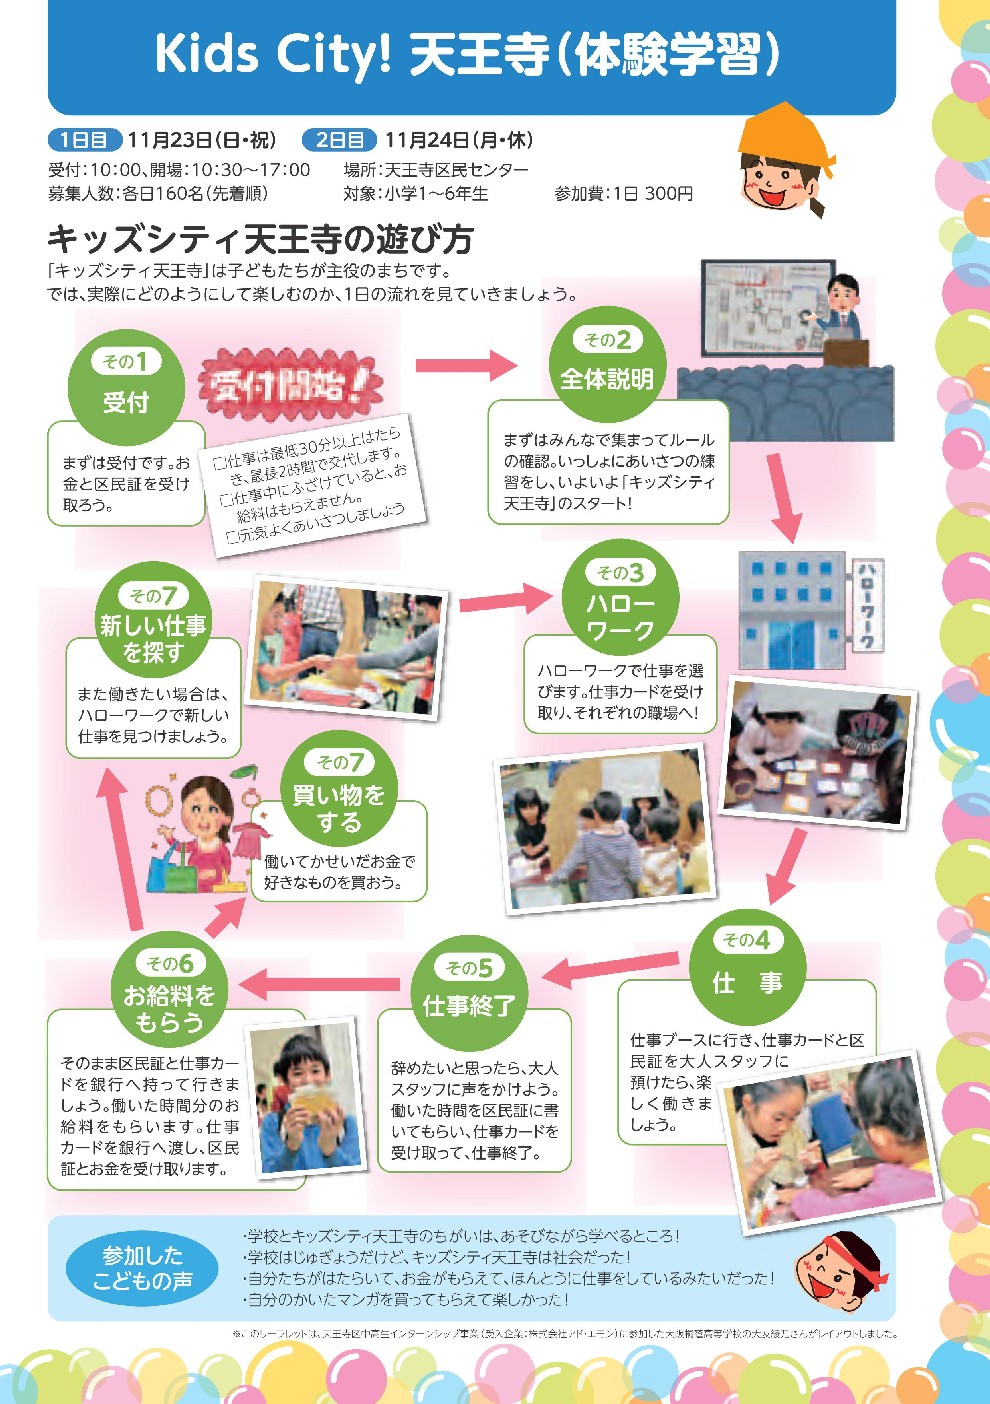 http://www.cobon.jp/news/2014/08/27/KidsCity_naka_0813_011.jpg